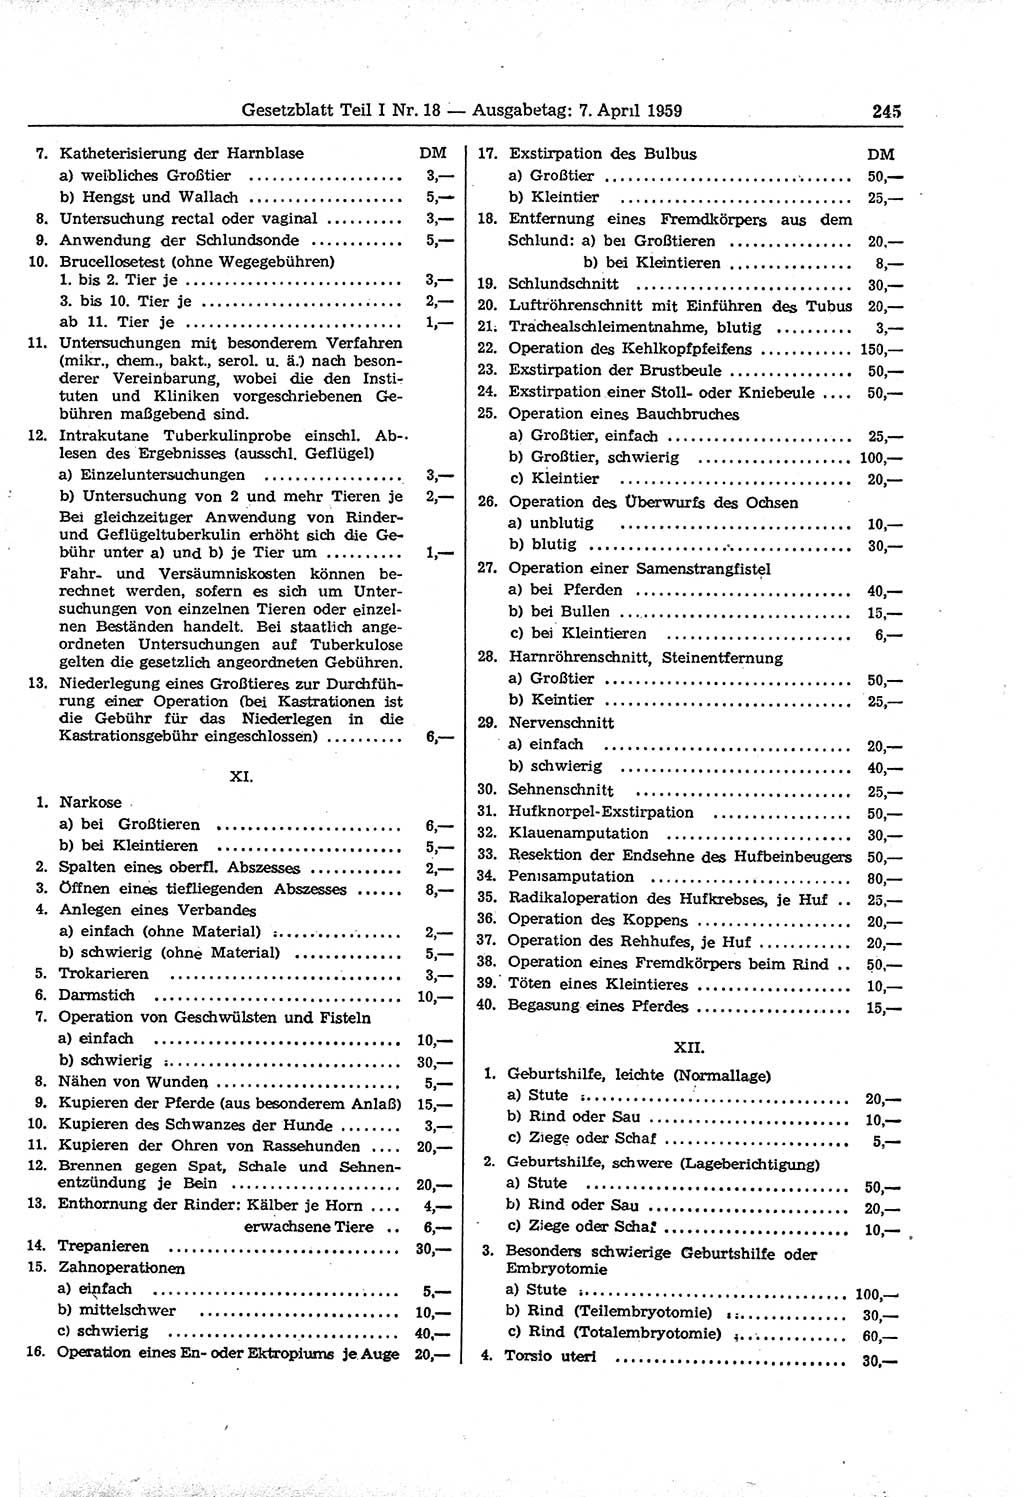 Gesetzblatt (GBl.) der Deutschen Demokratischen Republik (DDR) Teil Ⅰ 1959, Seite 245 (GBl. DDR Ⅰ 1959, S. 245)